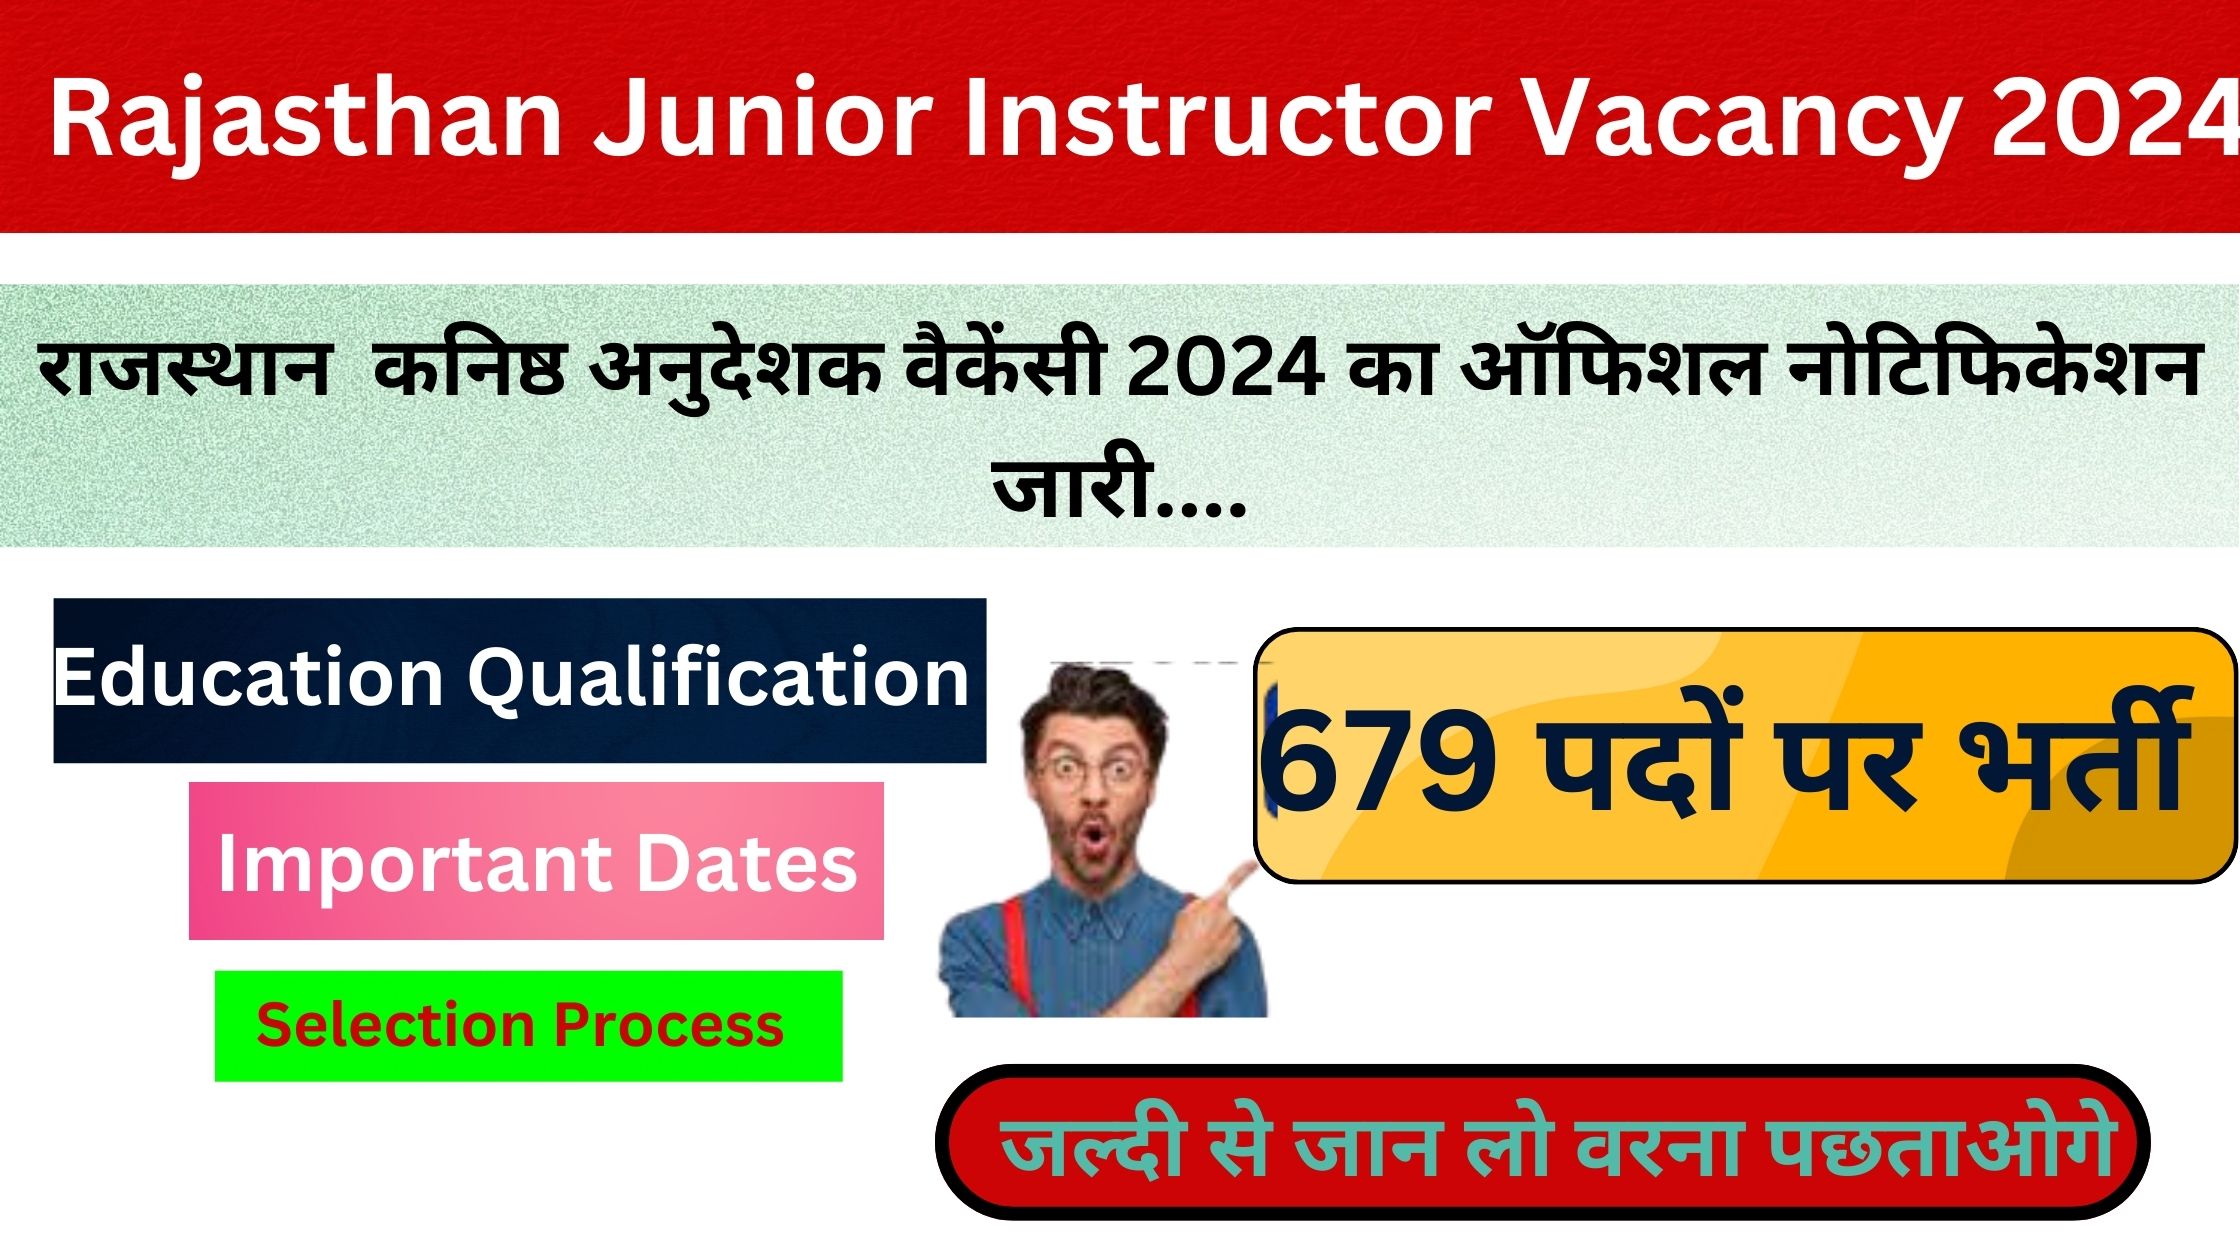 Rajasthan Junior Instructor Vacancy 2024 | राजस्थान कनिष्ठ अनुदेशक भर्ती 2024 का ऑफिशल नोटिफिकेशन जारी यहां से जाने संपूर्ण जानकारी